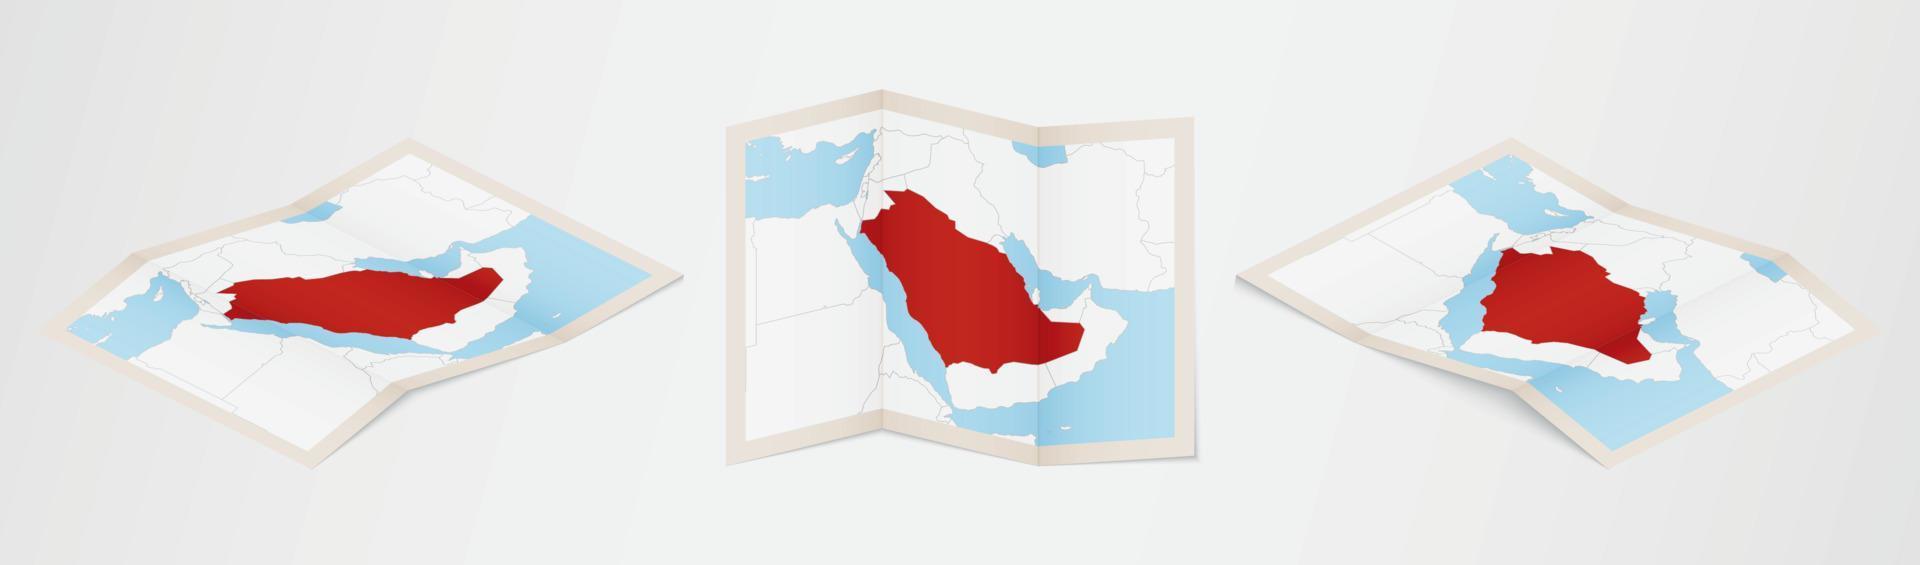 carte pliée de l'arabie saoudite en trois versions différentes. vecteur